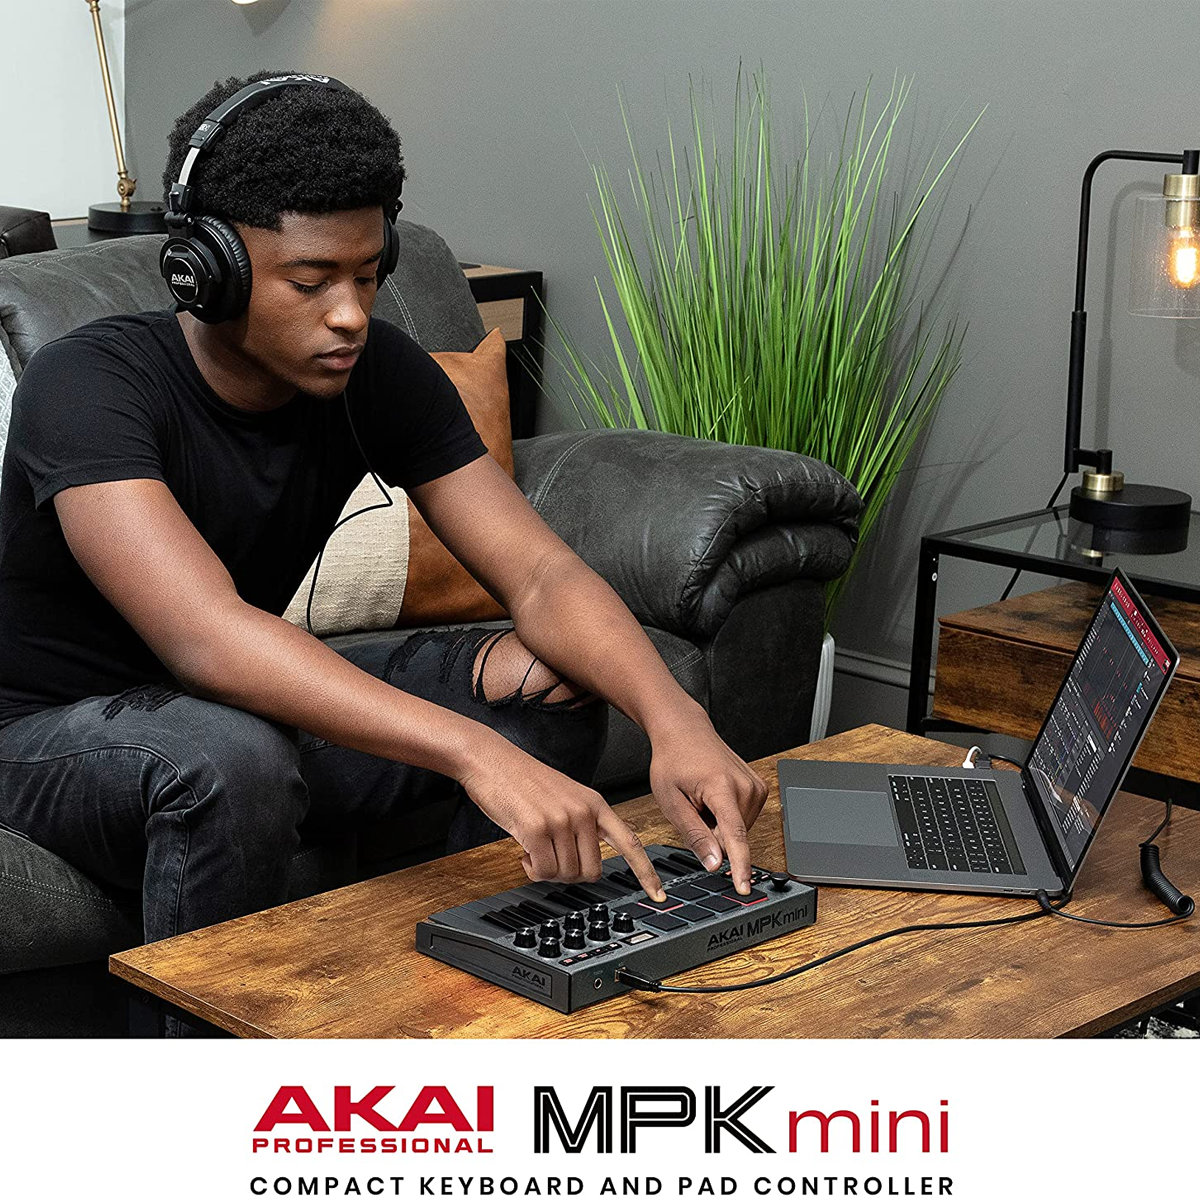  AKAI Professional MPK Mini MK3 - 25 Key USB MIDI